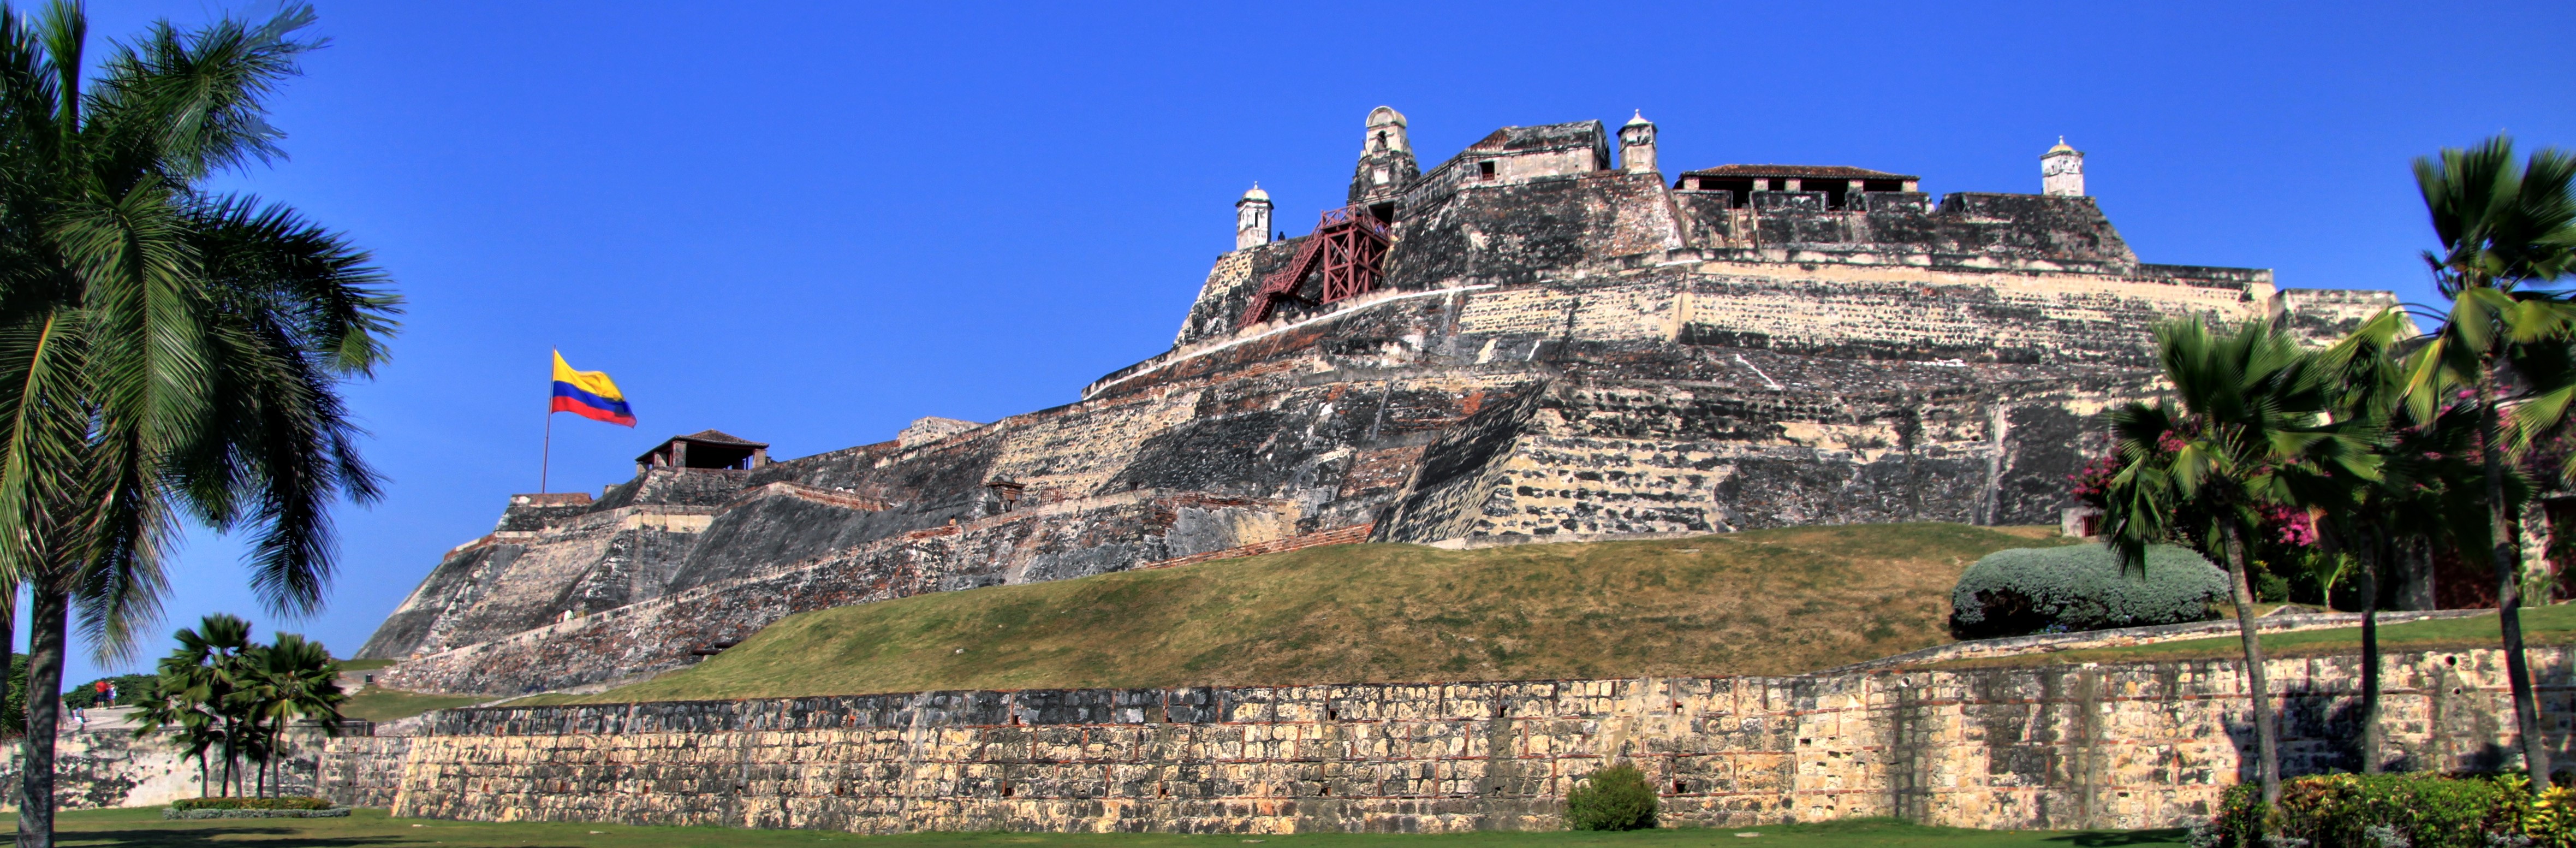 Castillo San Felipe de Barajas, em cartagena

passeios em cartagena